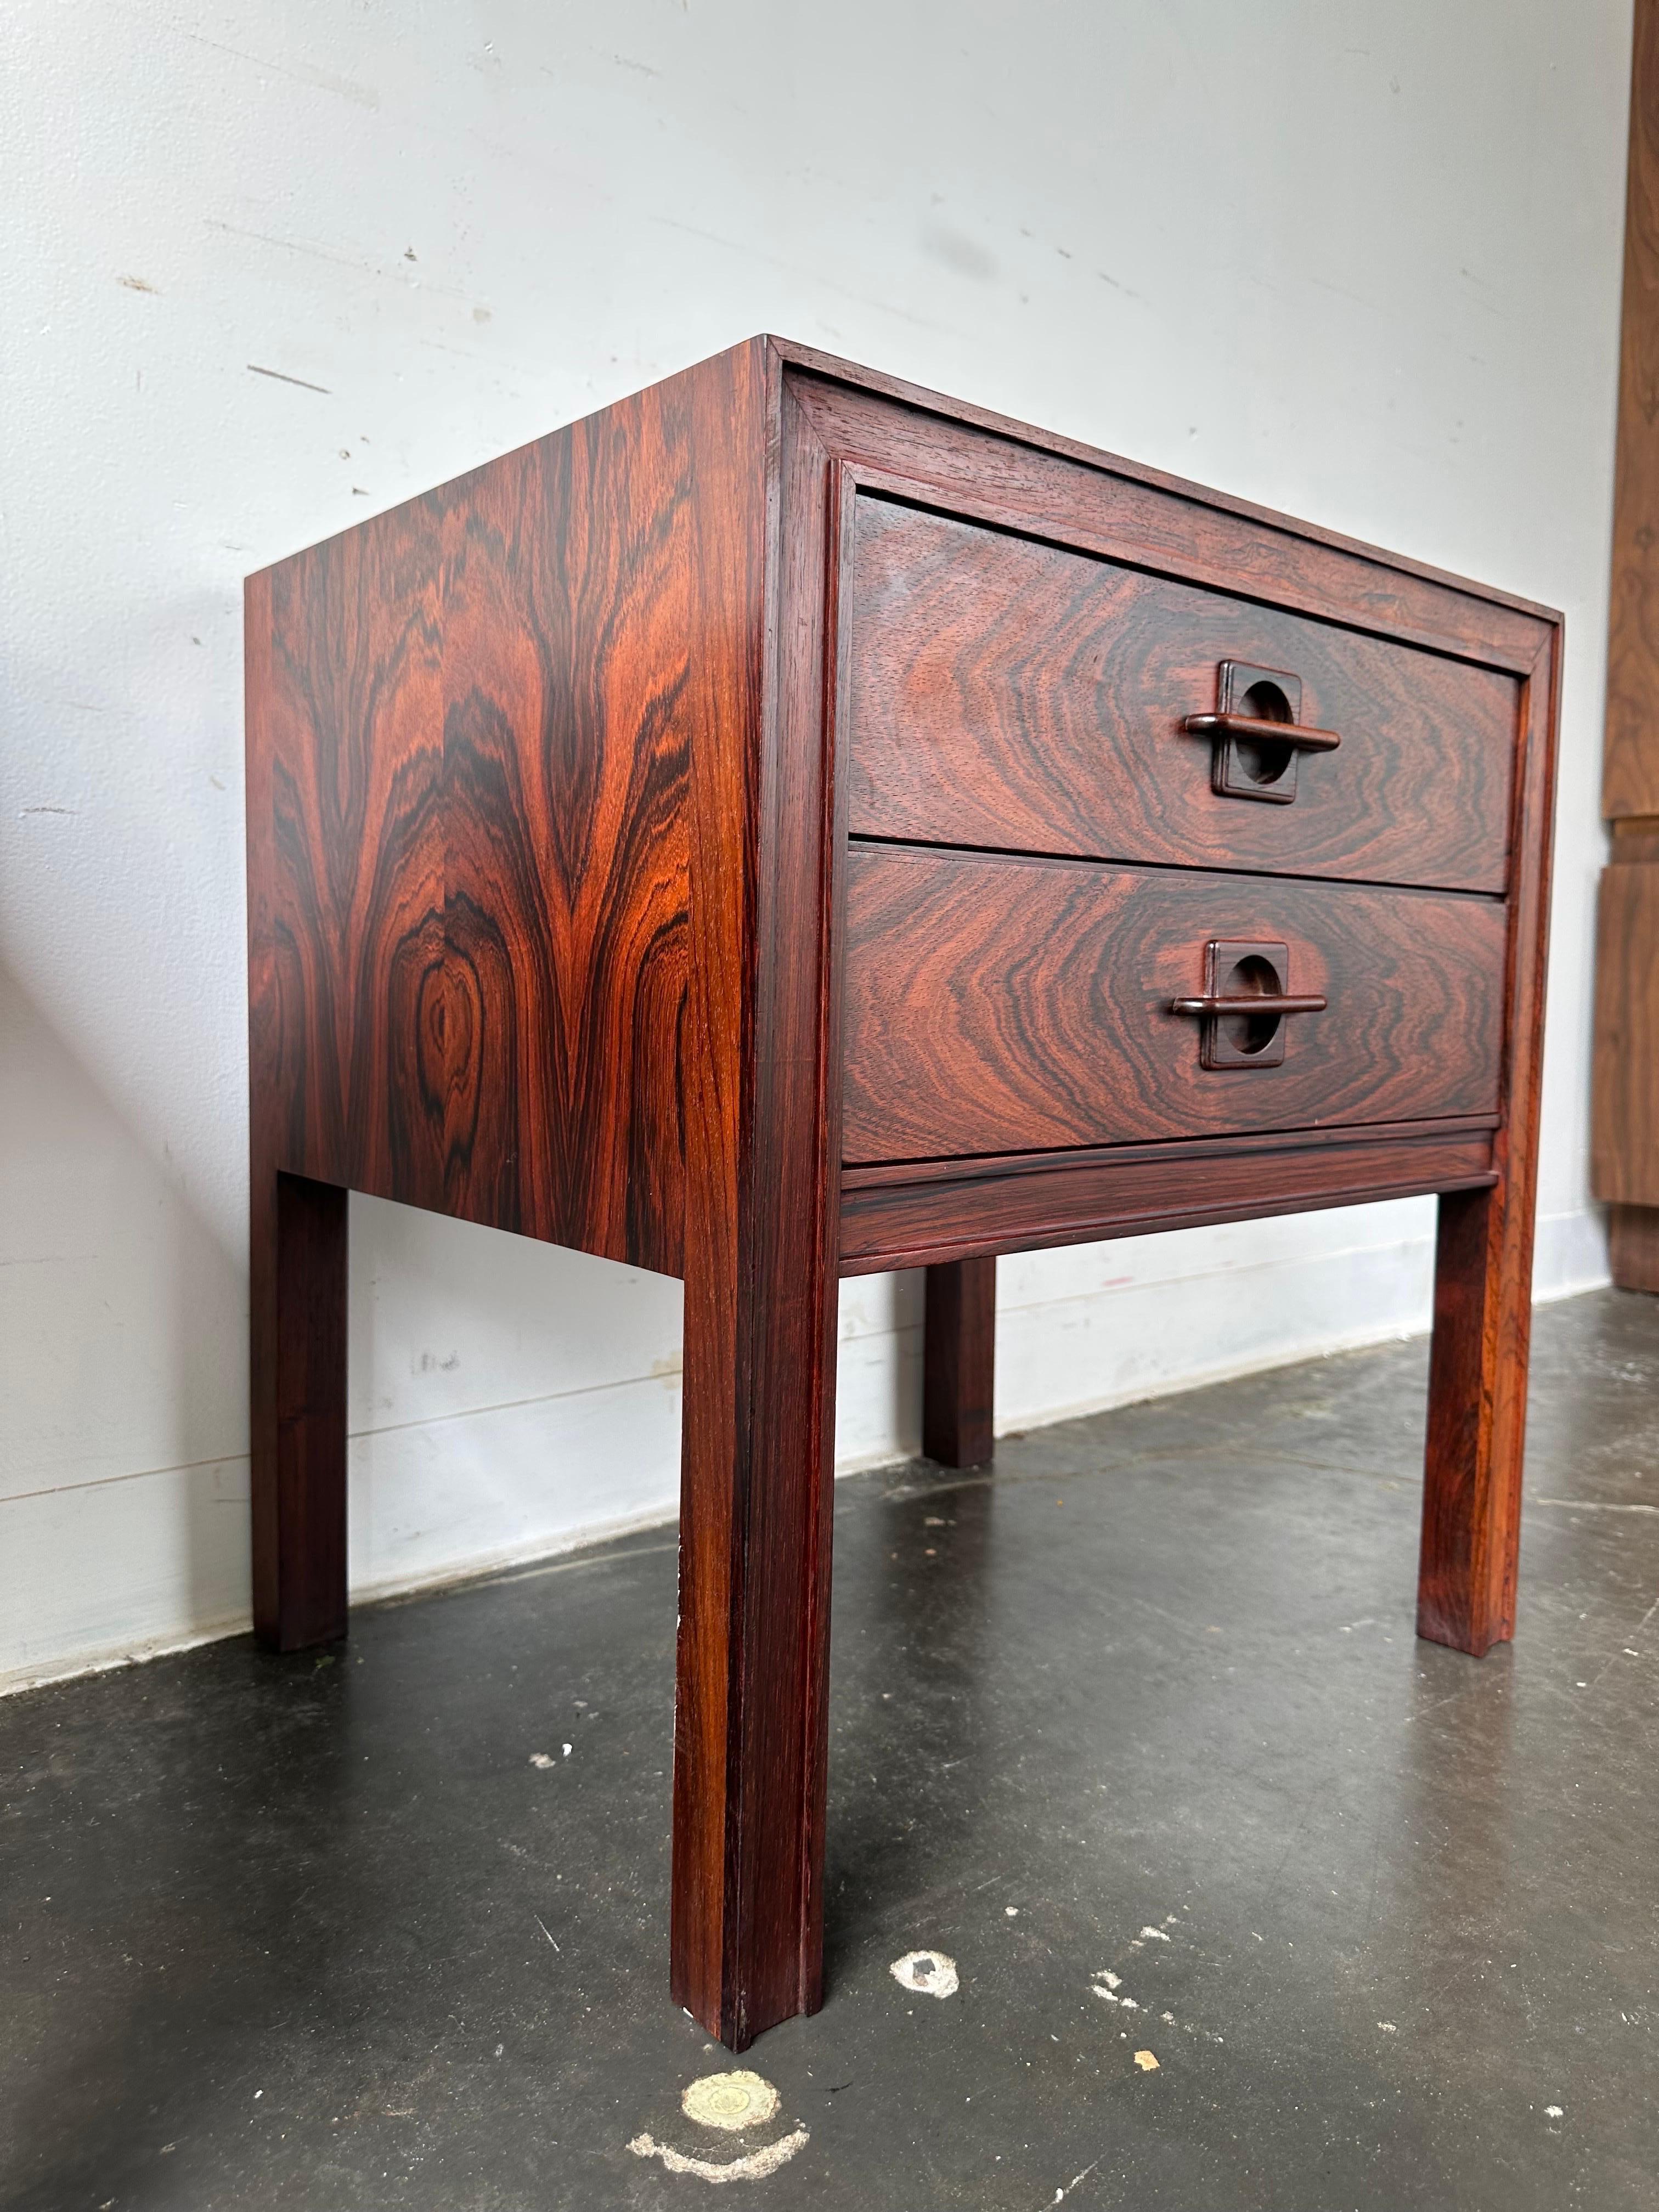 Danish Rosewood danish nightstands by Jorgen clausen 